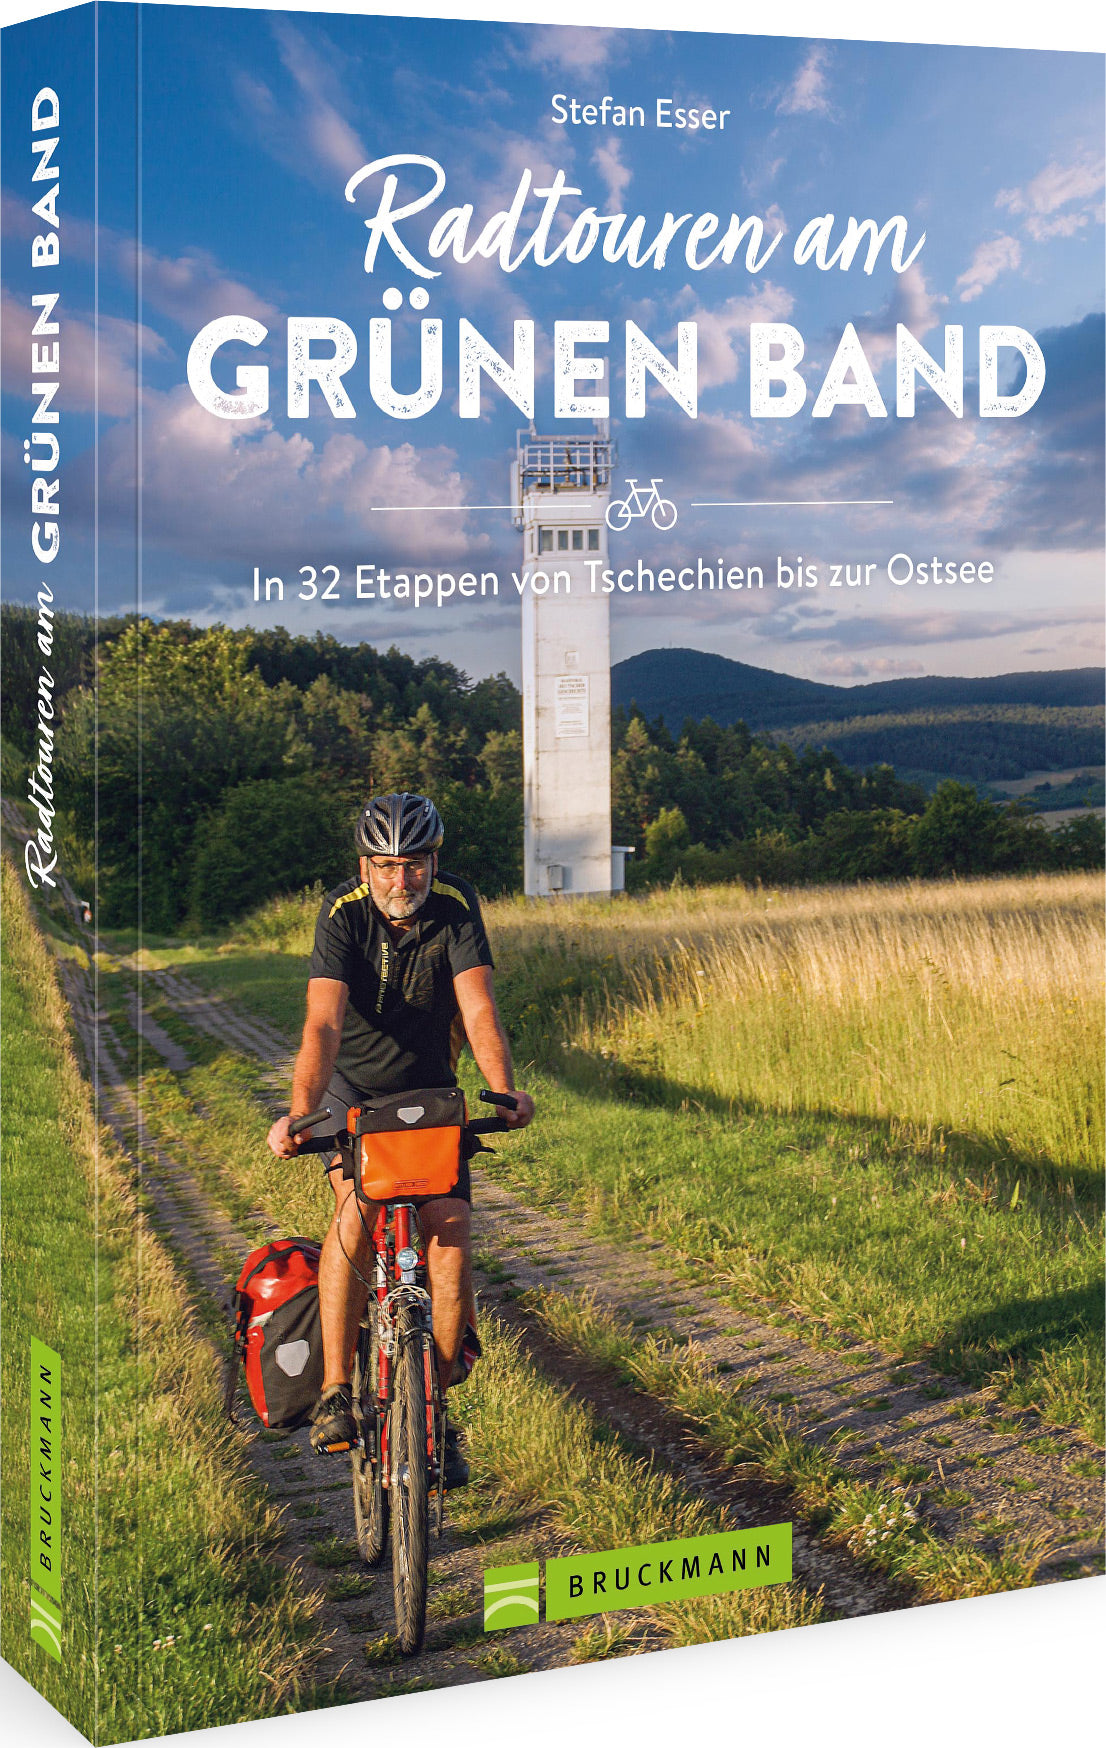 Radtouren am Grünen Band - In 32 Etappen von Tschechien bis zur Ostsee